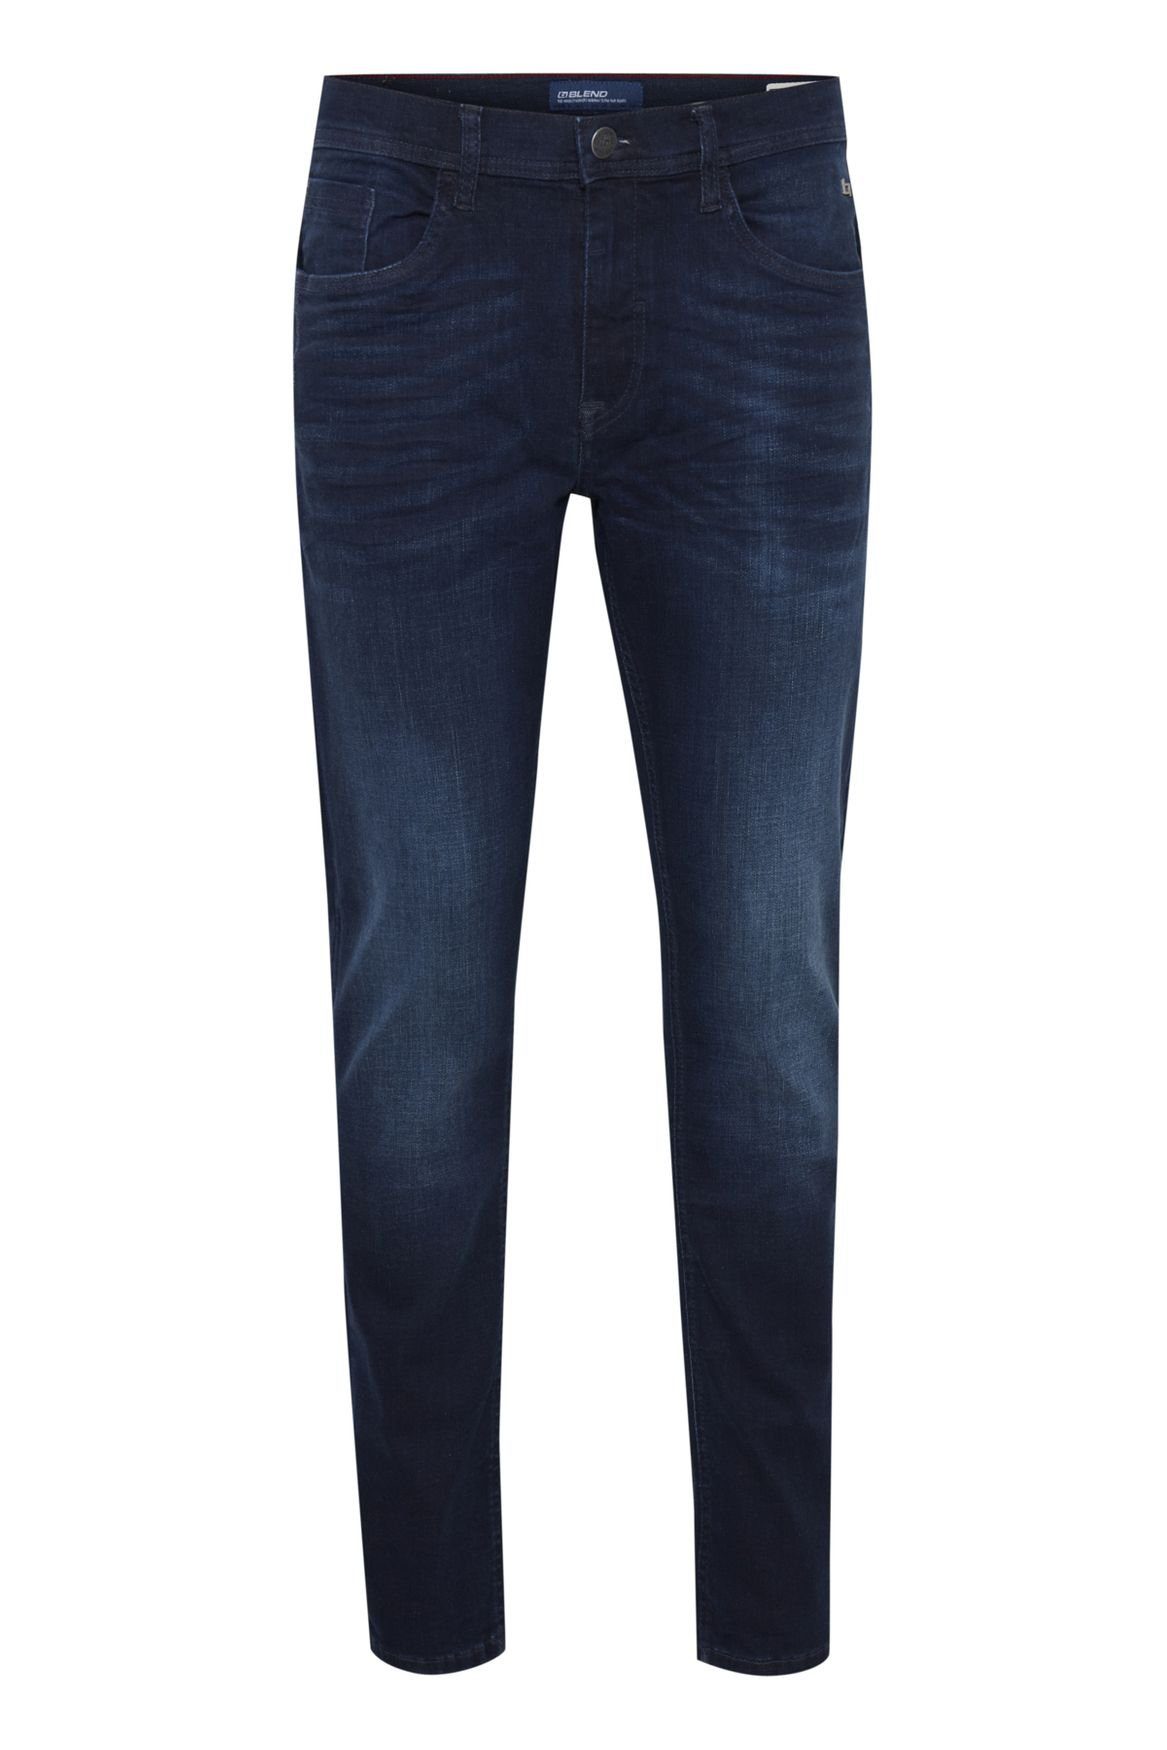 Jeans TWISTER Basic Dunkelblau Slim-fit-Jeans FIT Blend Hose 5196 in Fit Slim Denim Stoned Washed